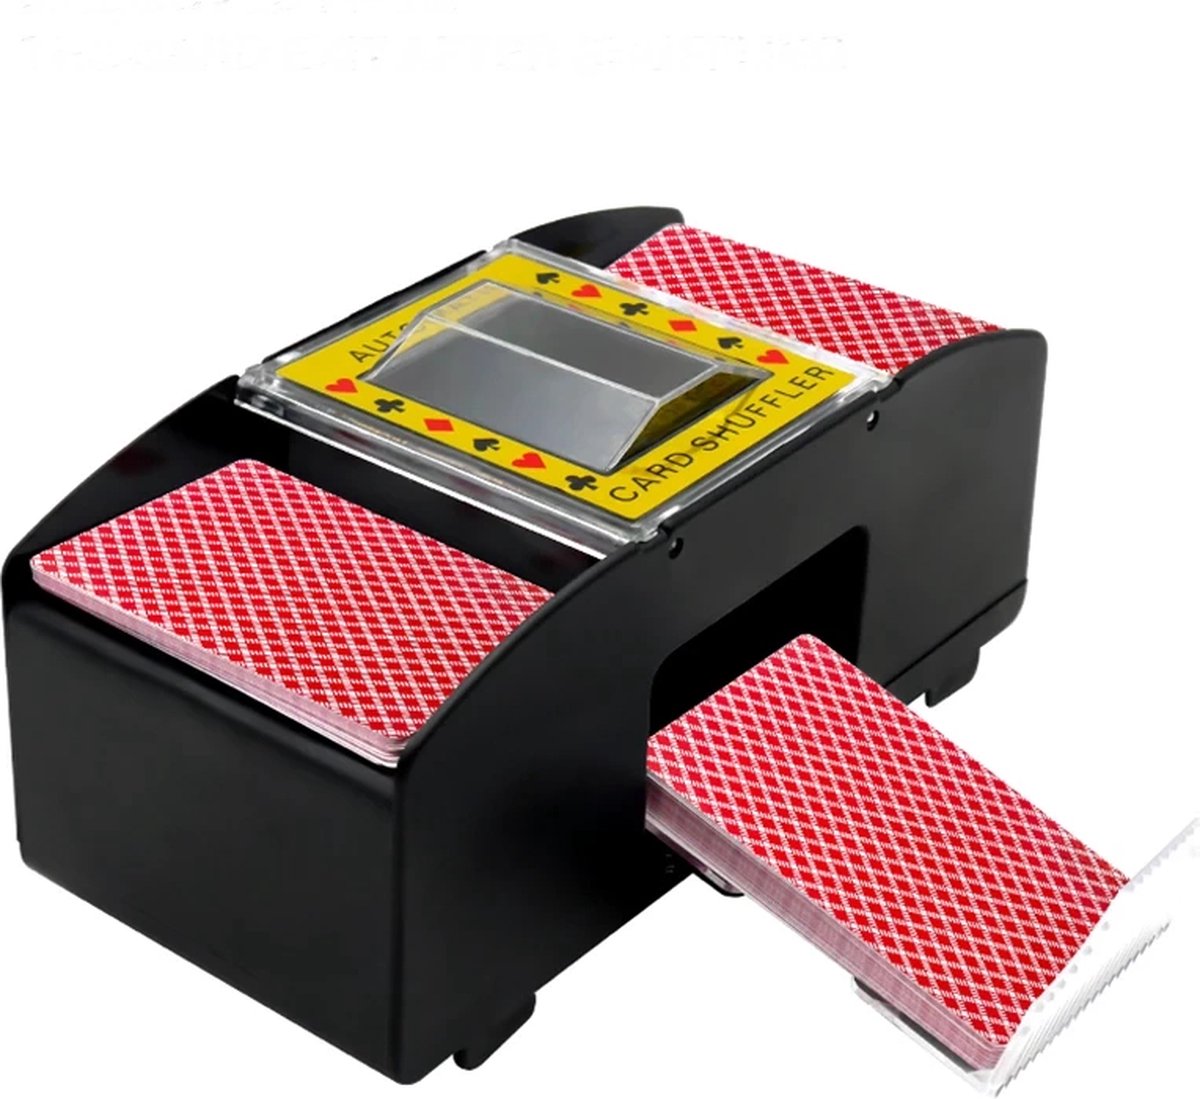 Kaartschudmachine - kaartenschudder - automatische kaartenschudder - spelkaartenschudder met batterijen en met 2 decks spelkaarten
